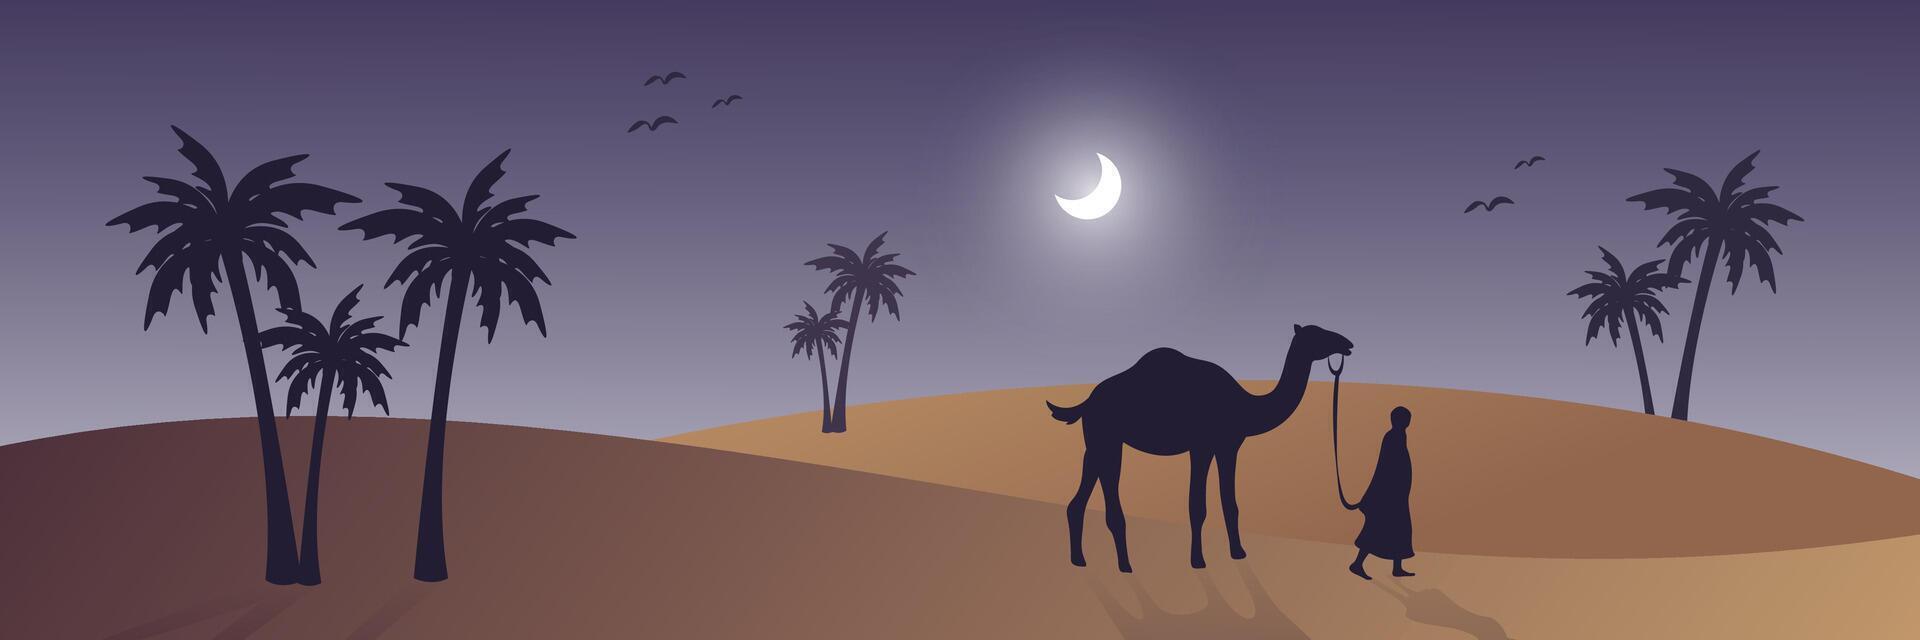 Arabeske Netz horizontal Banner, Silhouette Kamel und Palme Baum, schön Mondlicht, Nacht Aussicht im Wüste Bereich, islamisch Hintergrund Vorlage Vektor